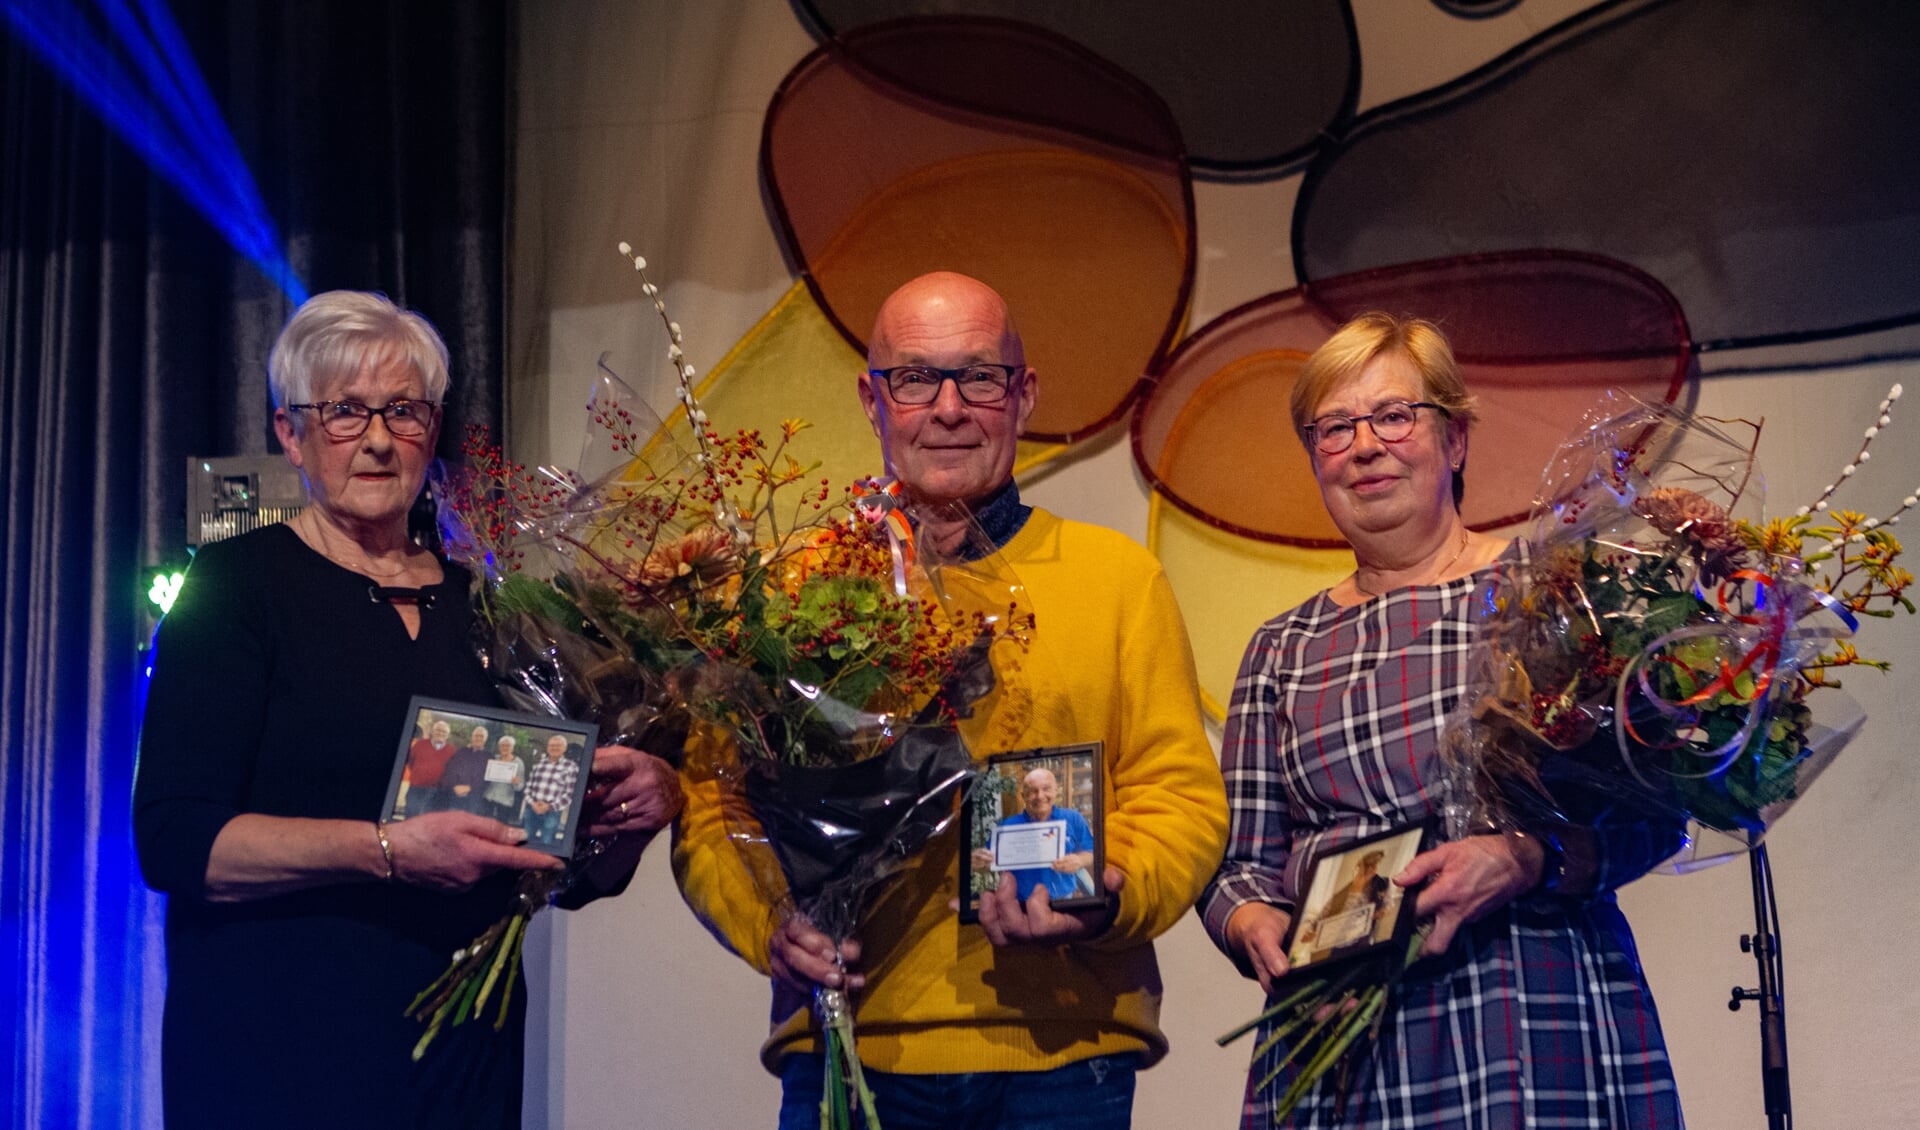 De drie genomineerden voor de Lingewaardse vrijwilligersprijs, met in het midden winnaar Willy Evers.